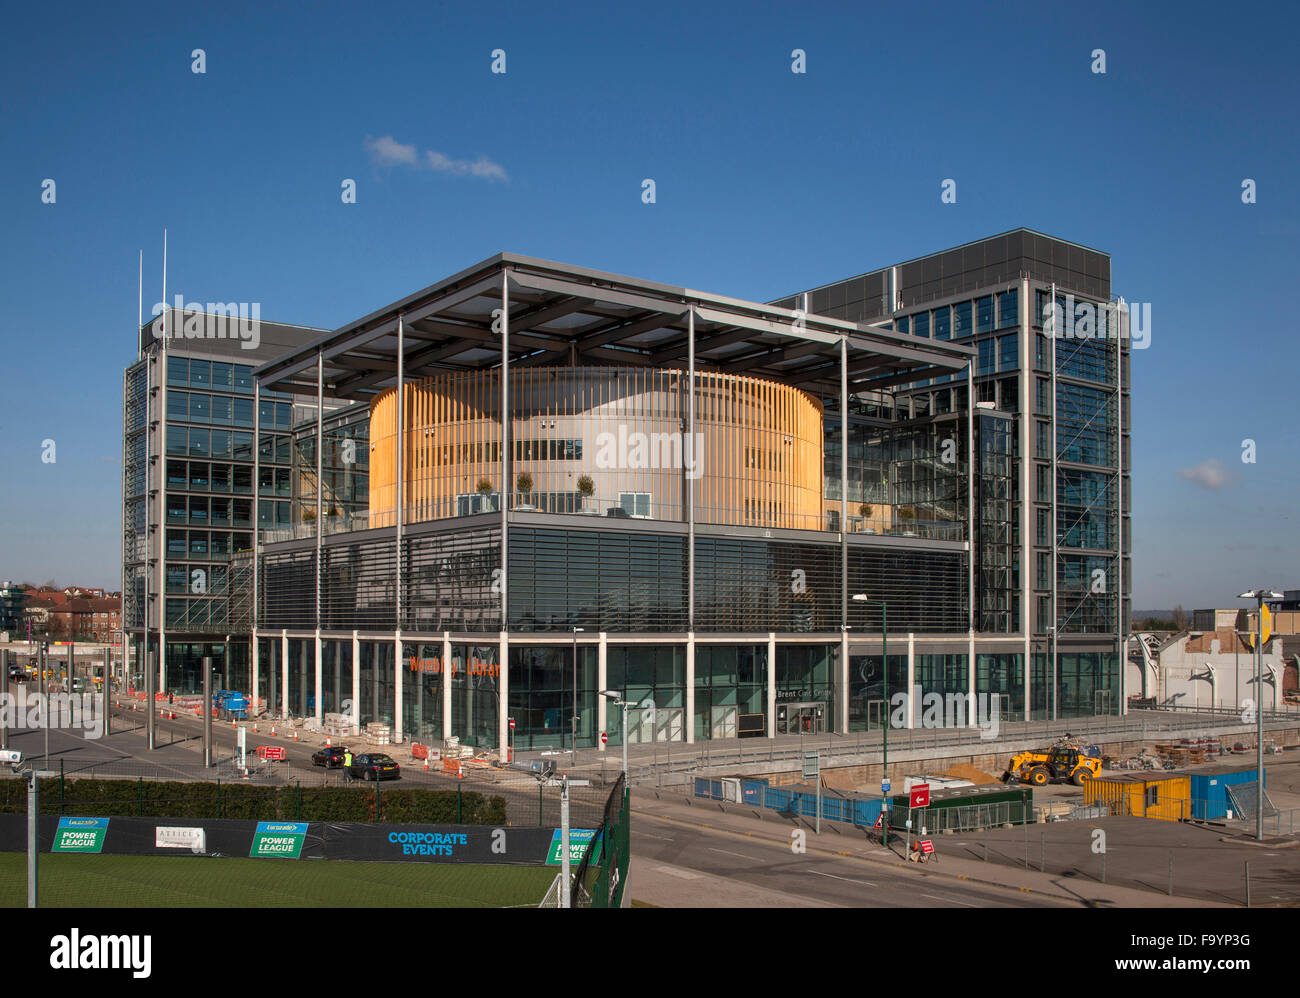 Brent Civic Center e Wembley biblioteca, un nuovo e moderno spazio civico e la libreria nella zona di rigenerazione in Brent. Esterno. Foto Stock